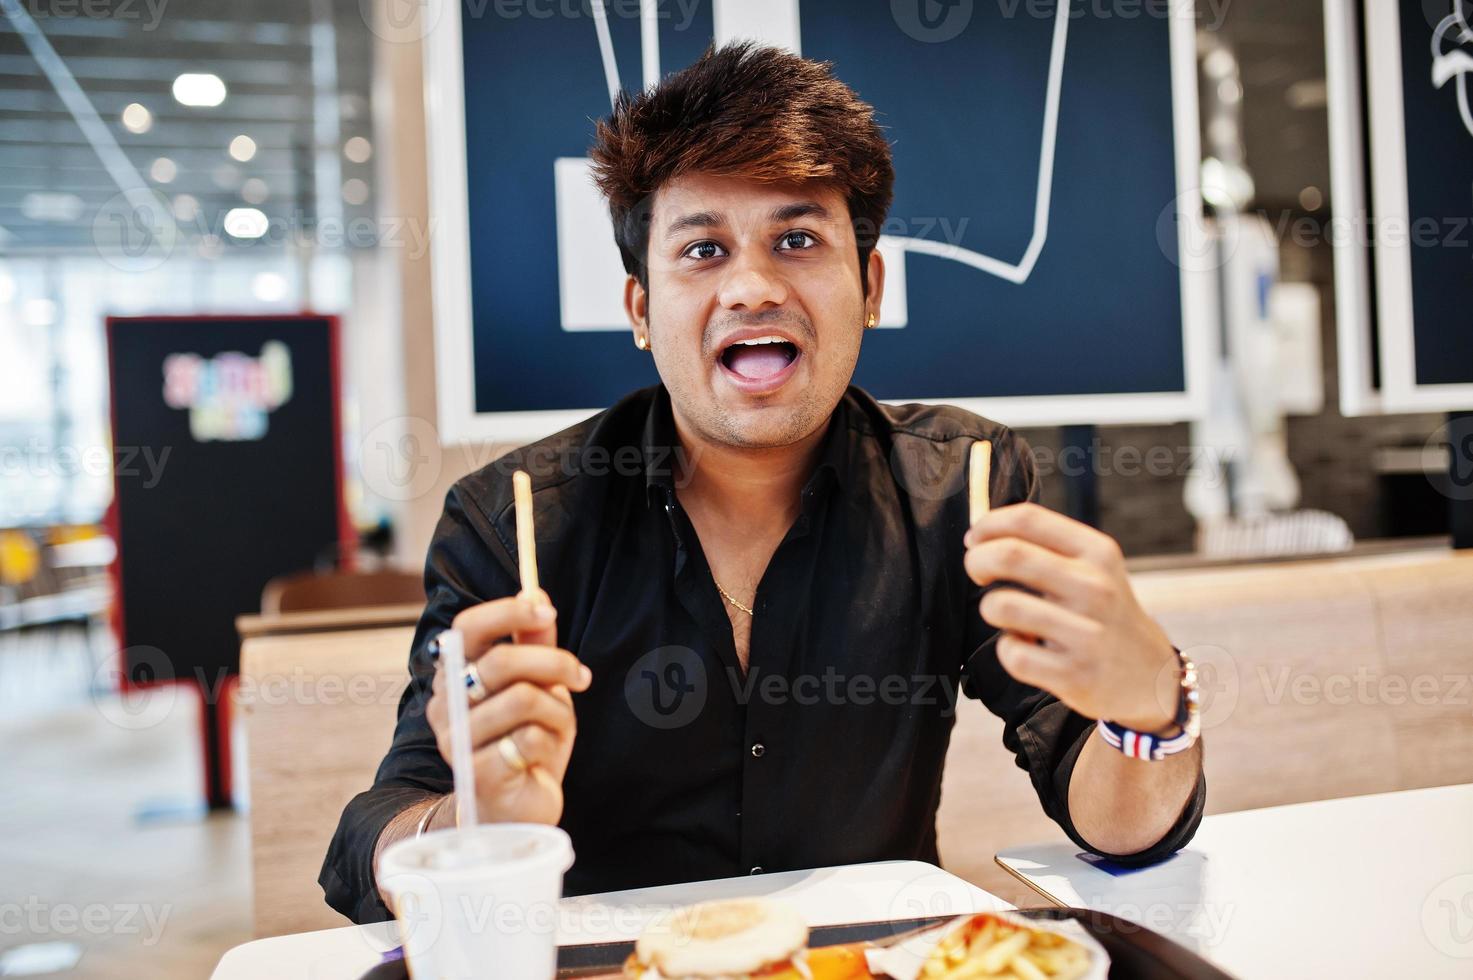 grappige en stijlvolle indiaan die in een fastfoodcafé zit en frietjes eet, laat zijn tong zien. foto